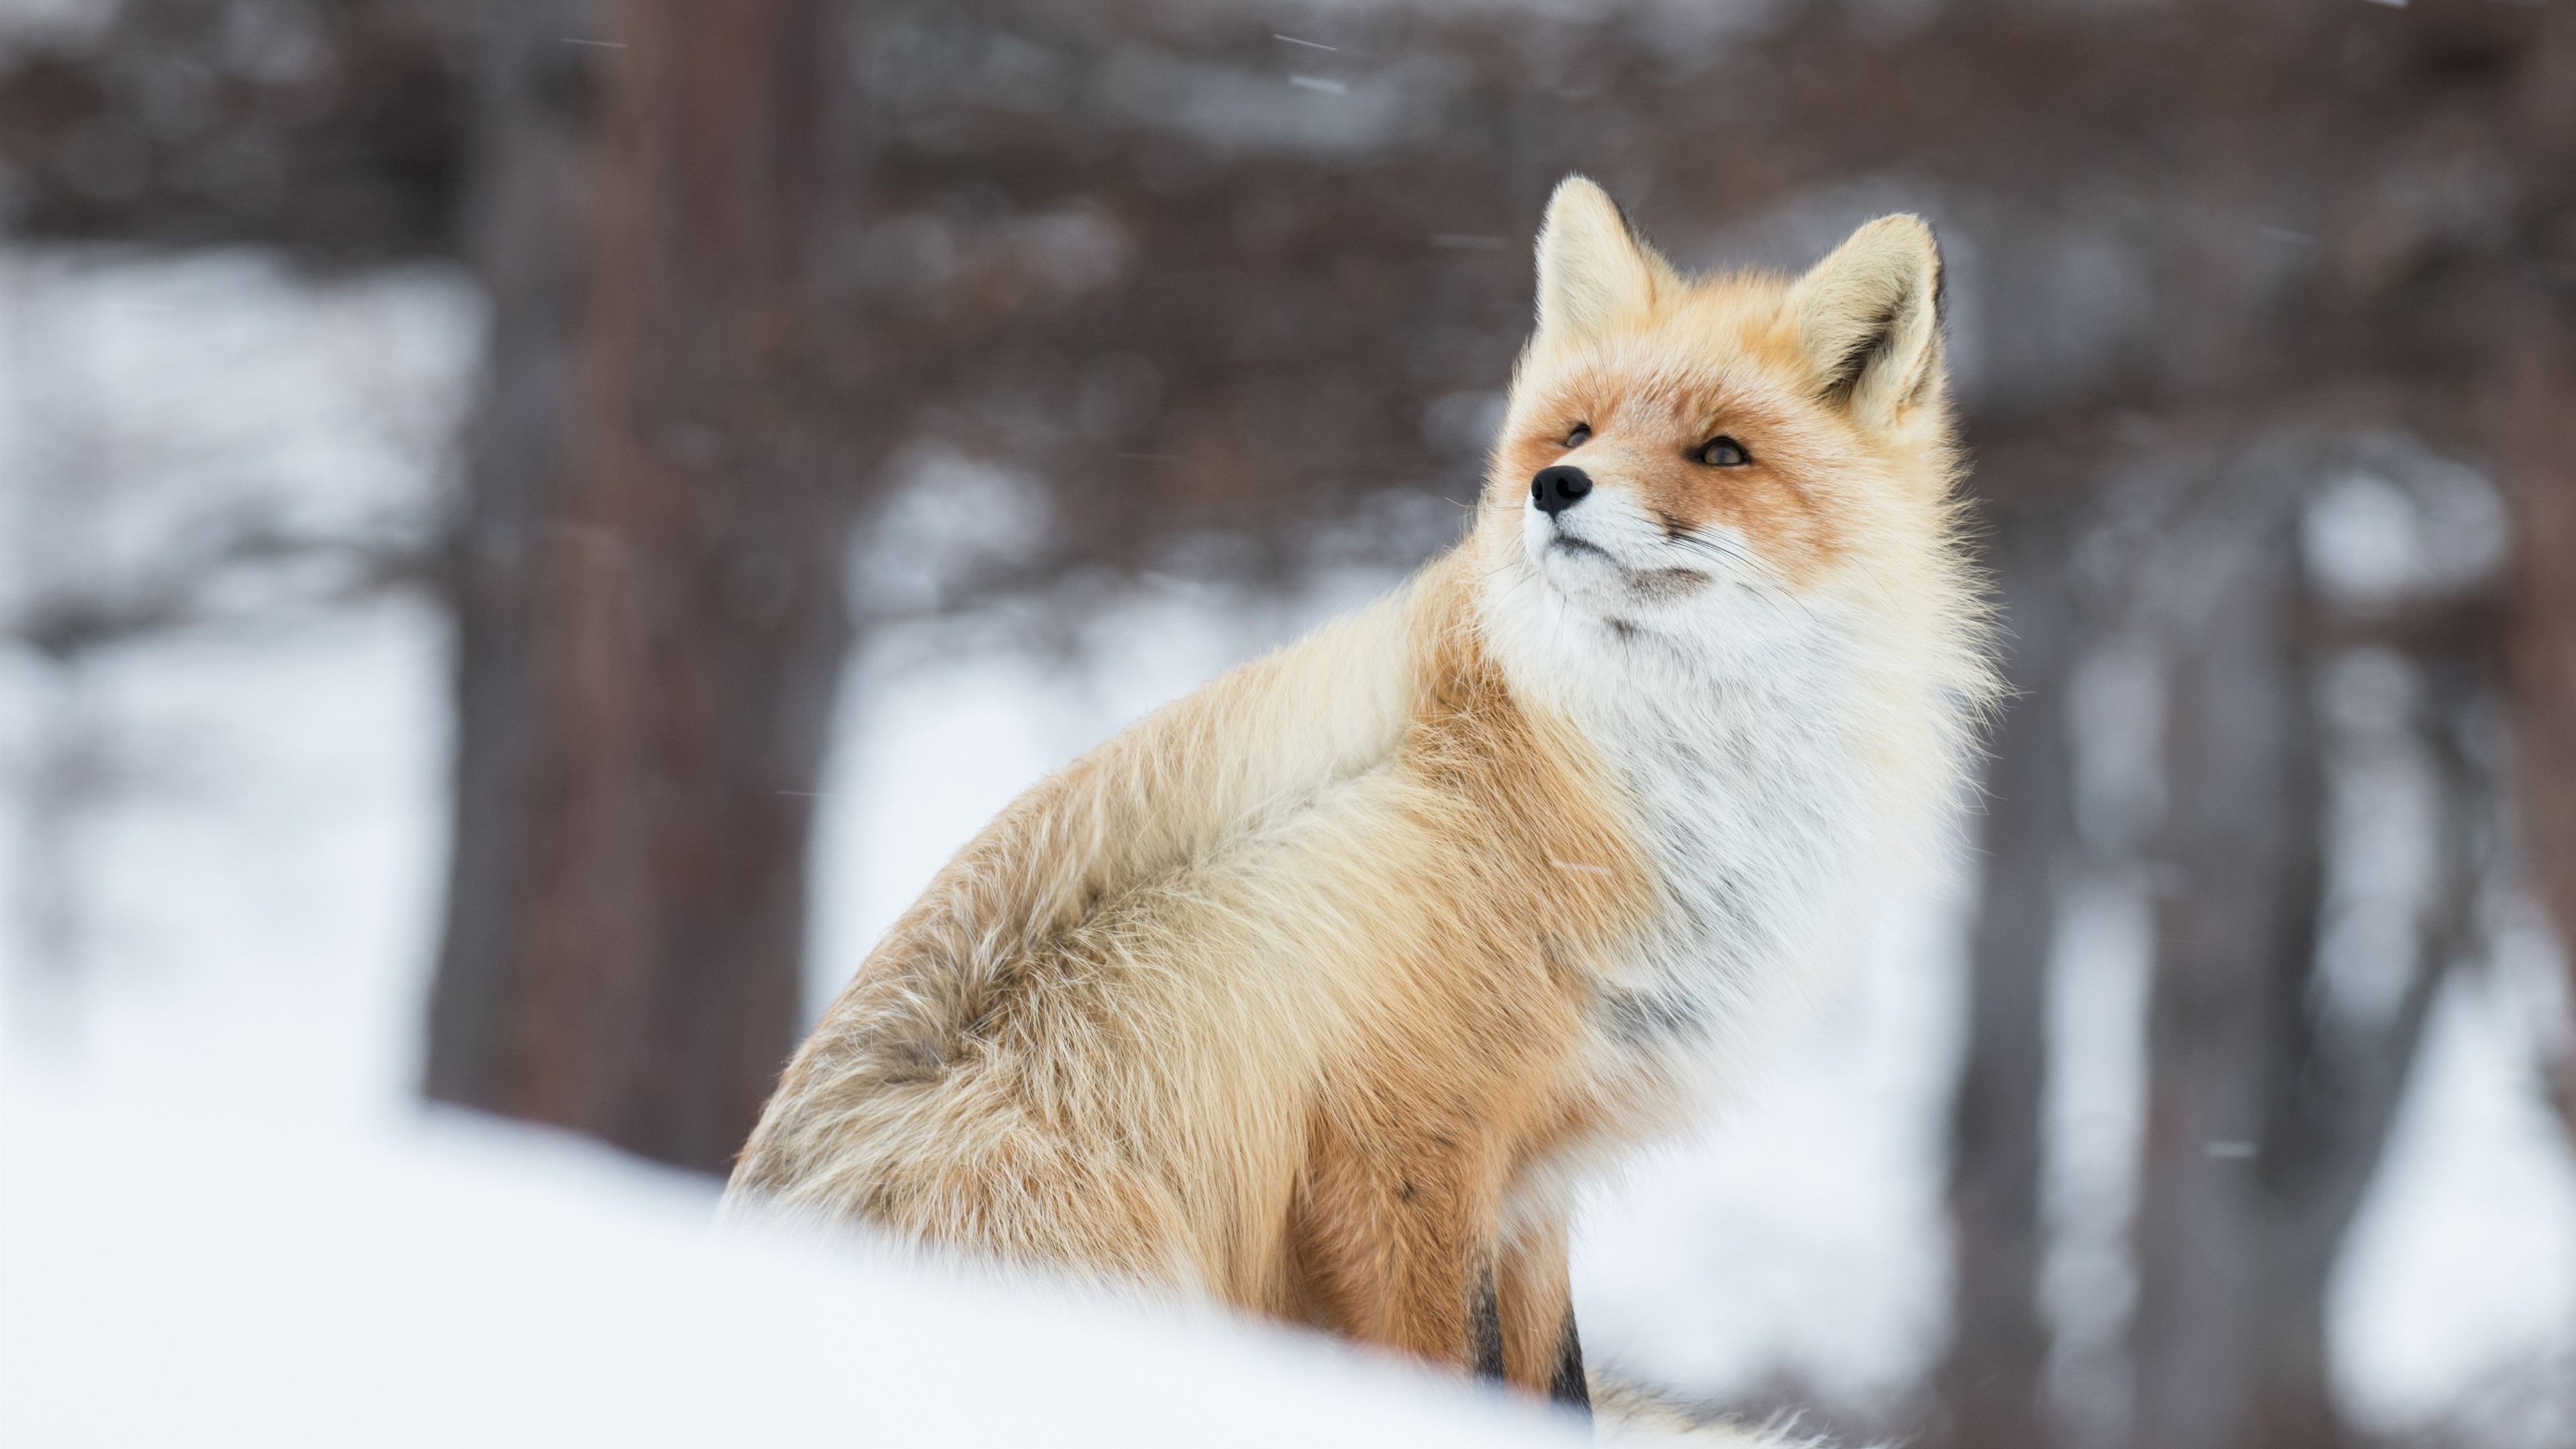  Winter Tiere Hintergrundbild 3840x2160. Tier im Winter, Fuchs, Schnee 3840x2160 UHD 4K Hintergrundbilder, HD, Bild